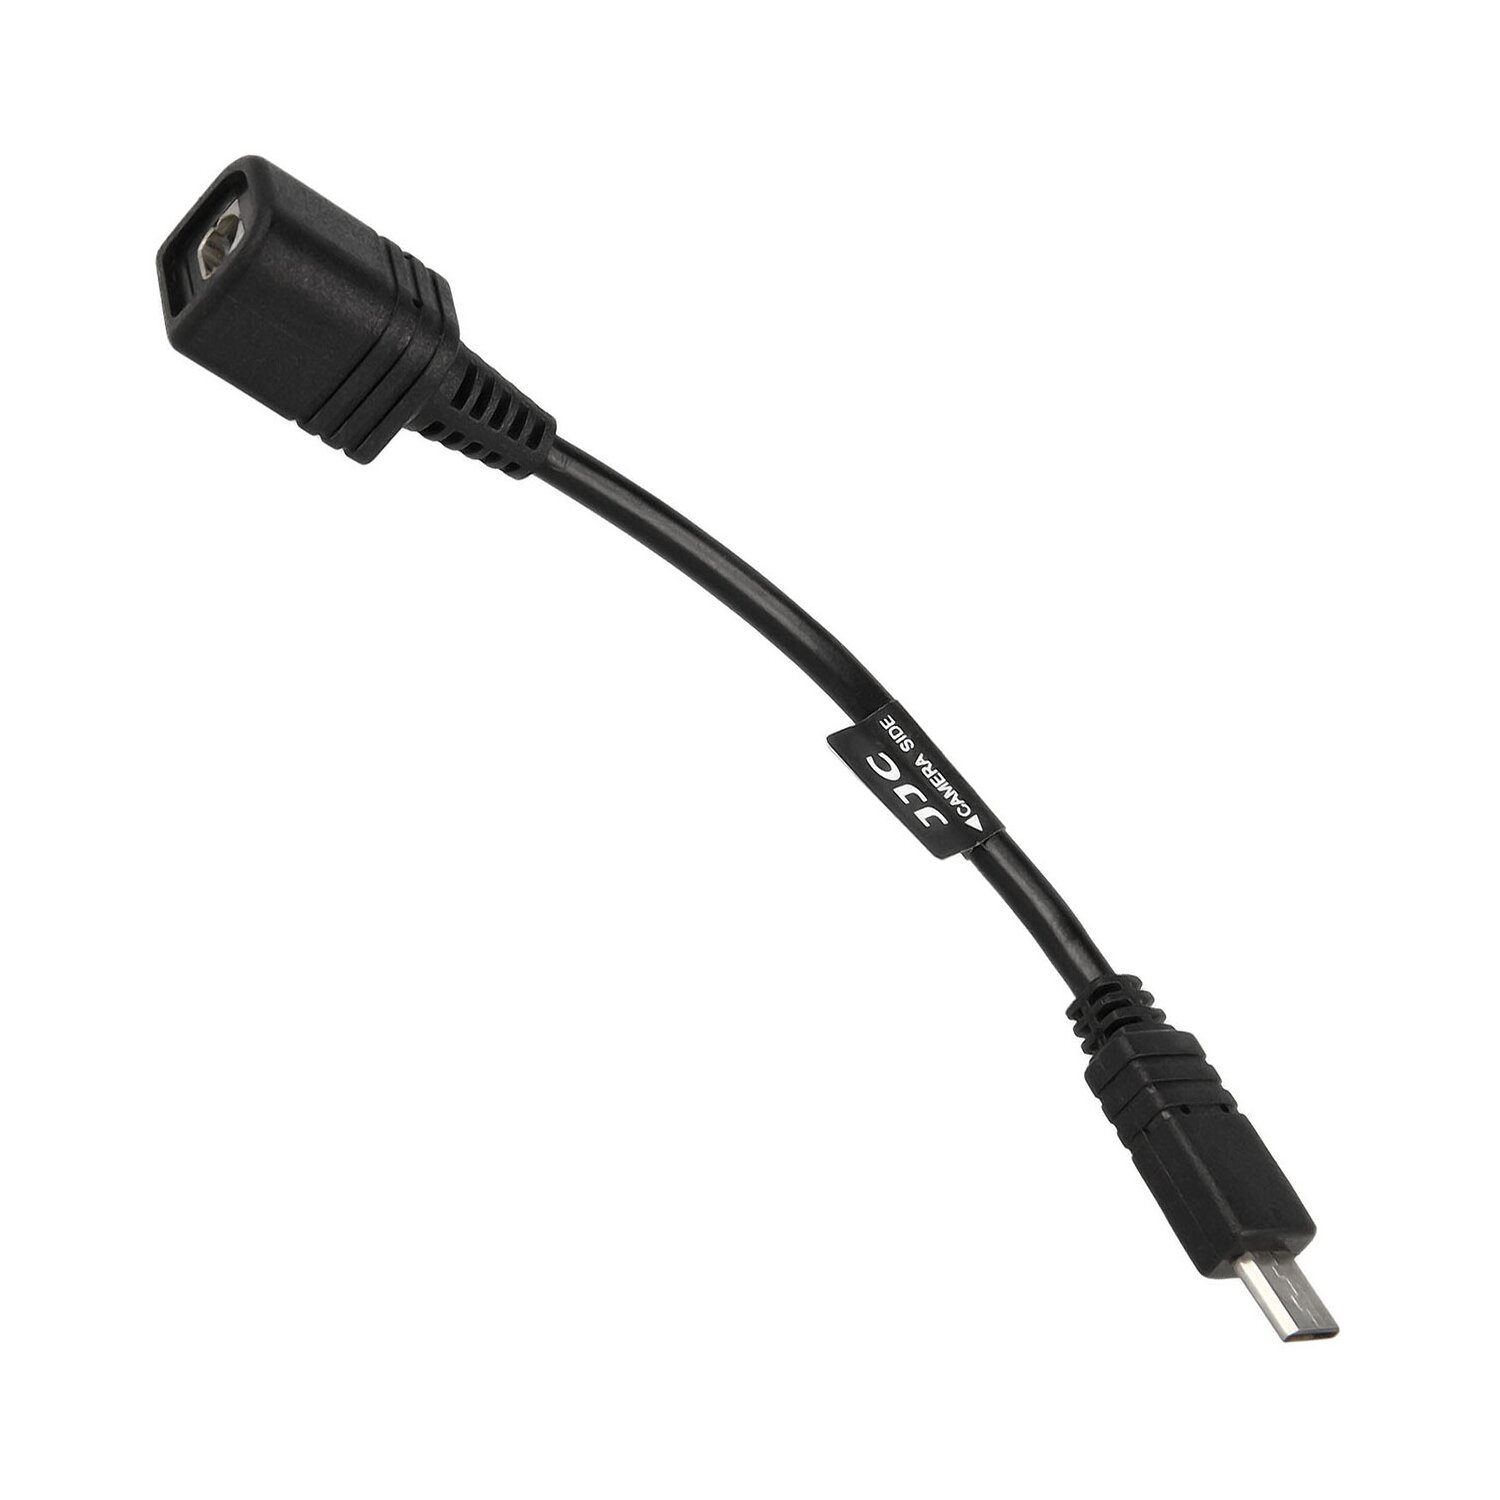 JJC Adapterkabel Verkängerungskabel zwischen Kabel-Fernauslöser kompatibel mit z.B. Sony RM-AV2 und einer Videokamera mit Multi Terminal Anschluss Ersatz für Sony vmc-avm1 A/V R Adapter Kabel